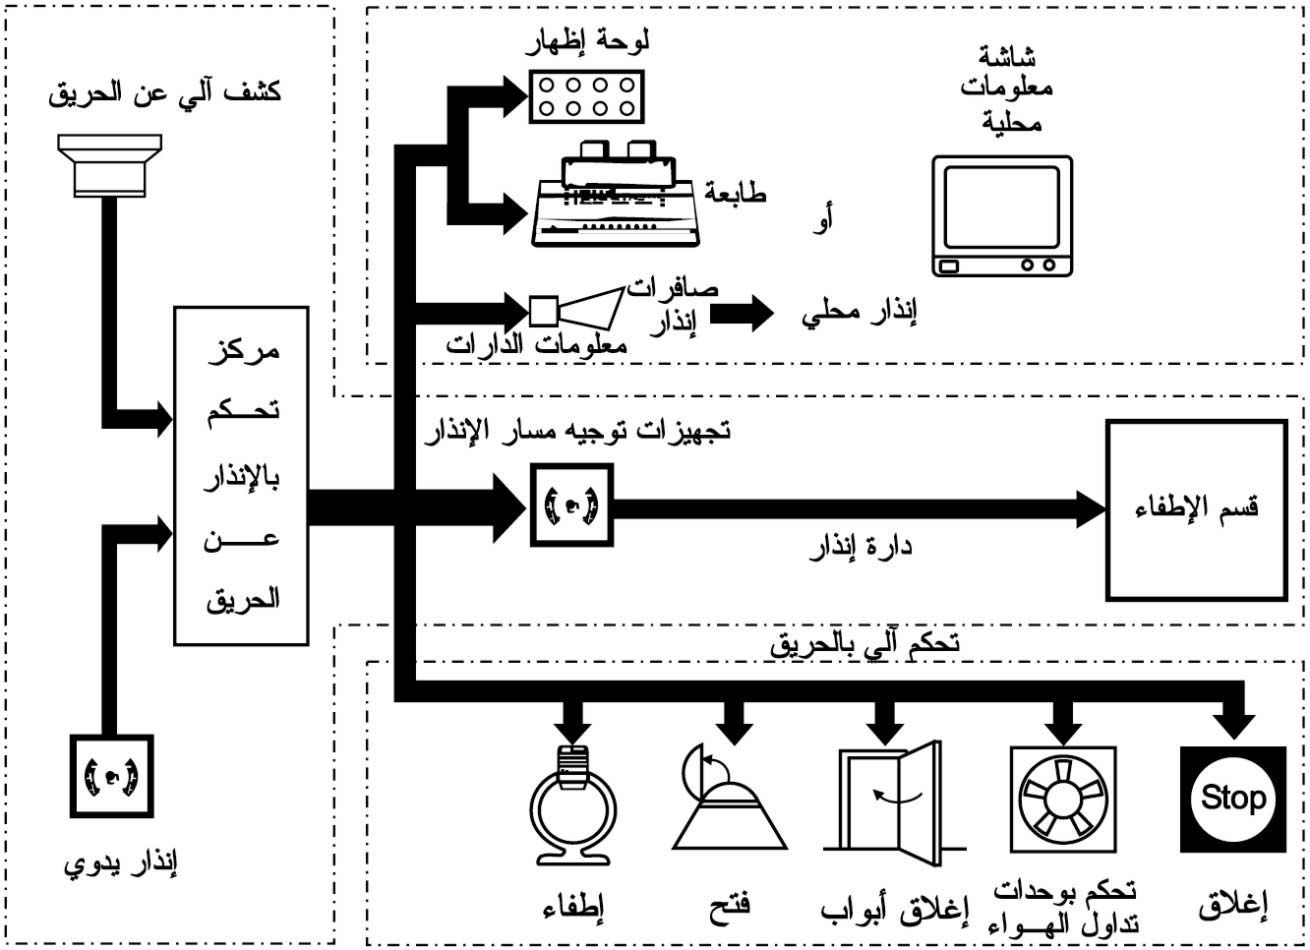 الموسوعة العربية | شبكات الإنذار والأمان في المنشآت